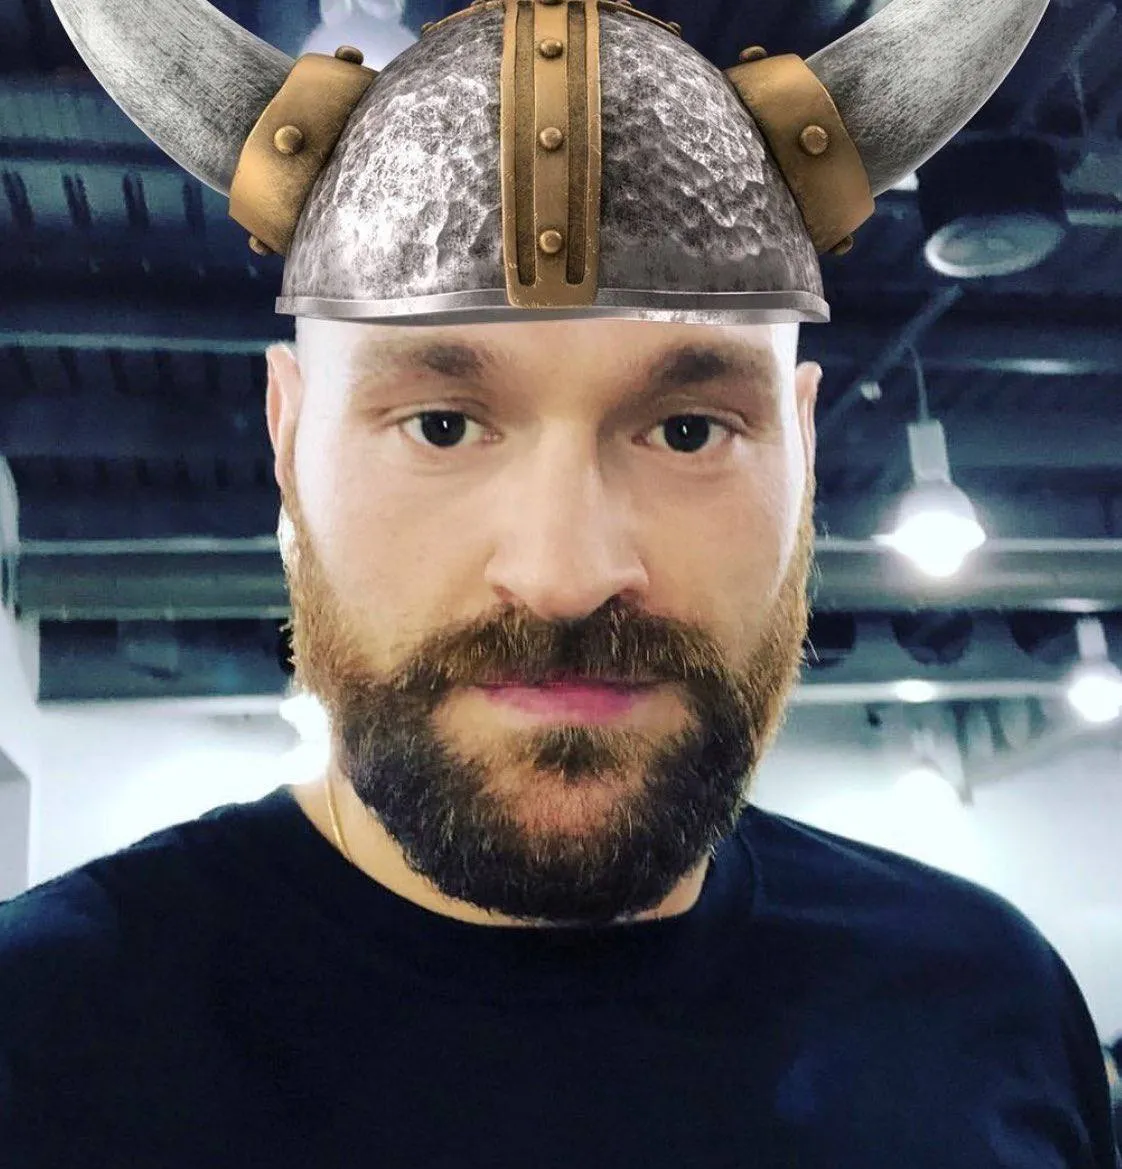 An image of Tyson Fury wearing a viking helmet.